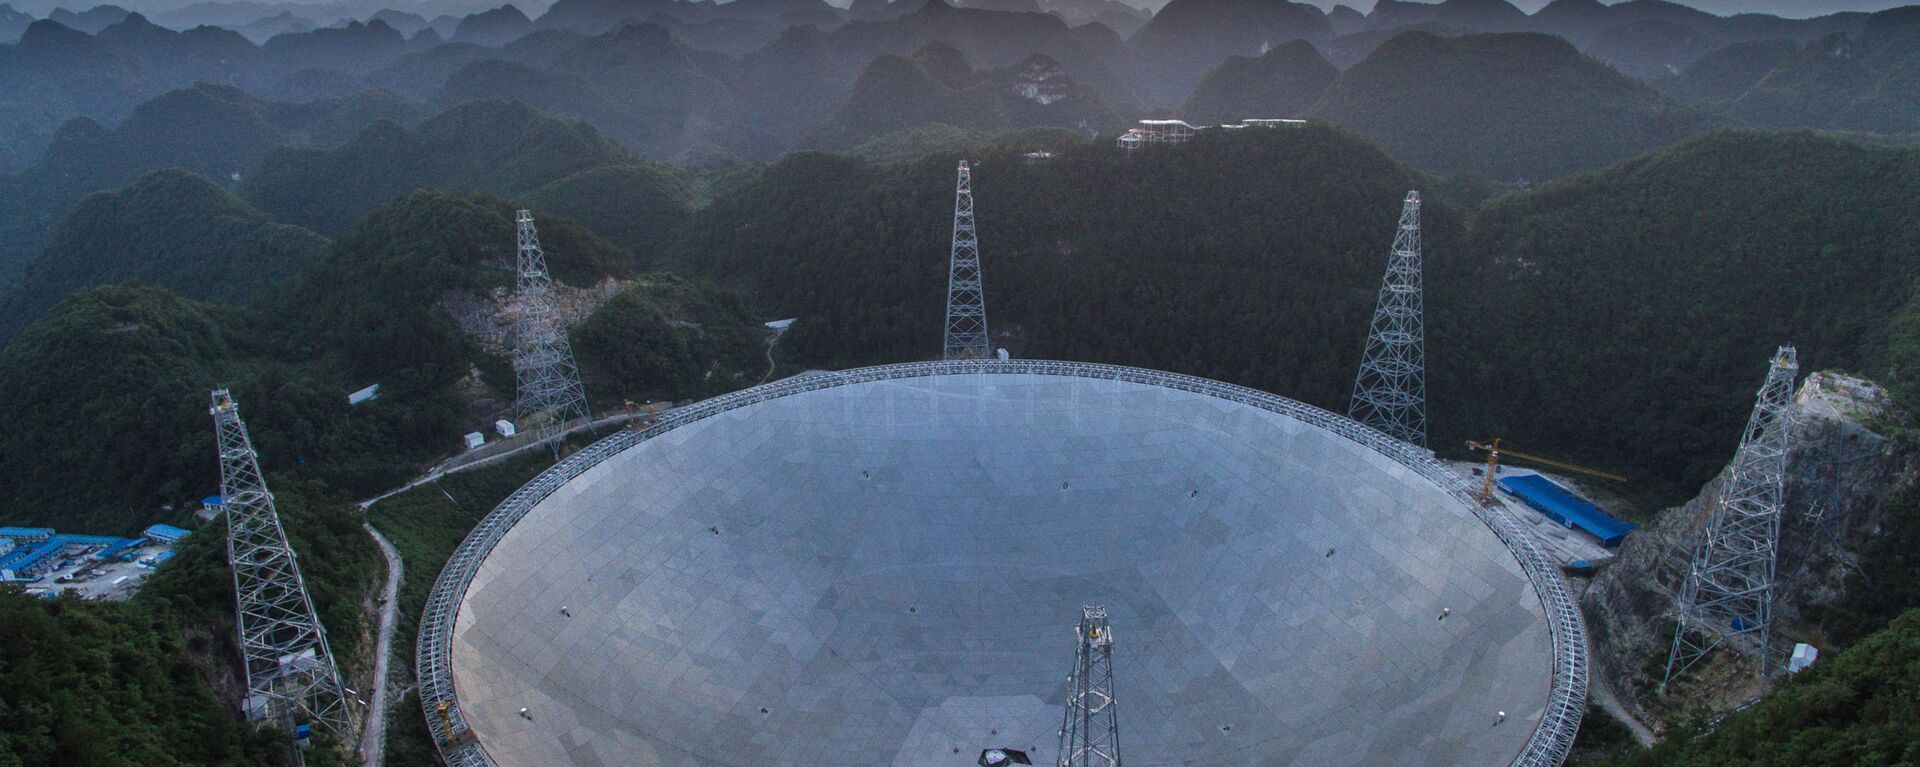 El radiotelescopio chino FAST  - Sputnik Mundo, 1920, 22.01.2020